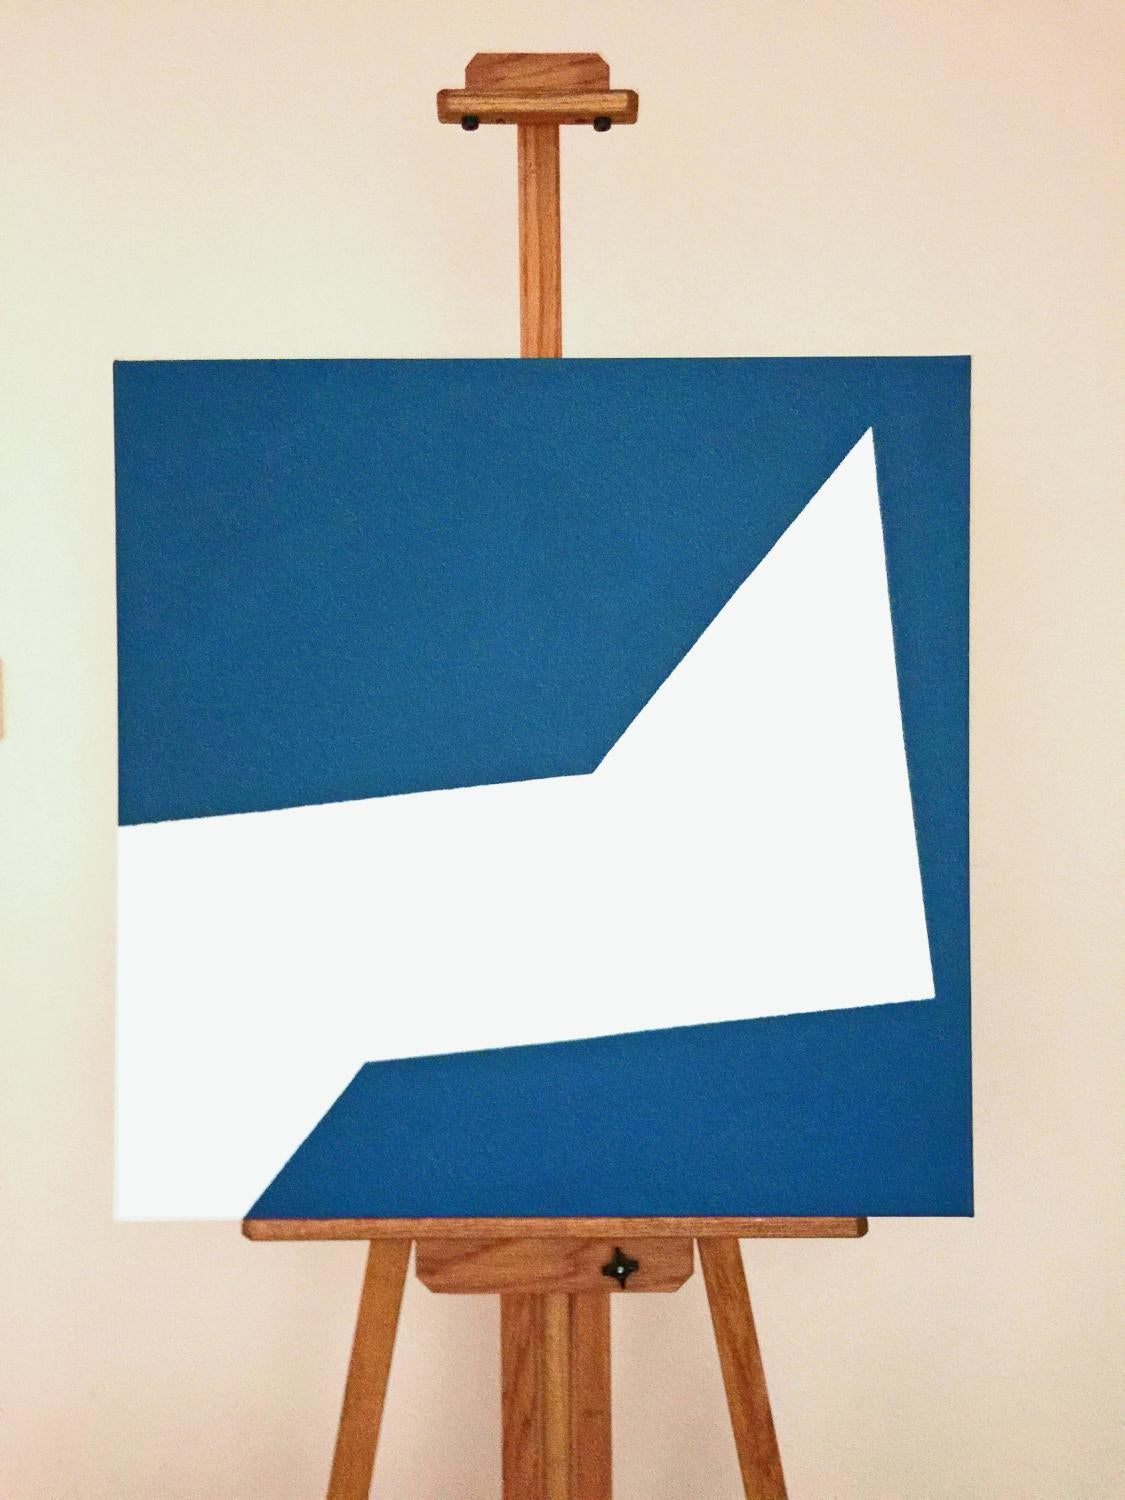 <p>Commentaires de l'artiste<br>L'artiste Shyun Song peint un carré fracturé en diagonale dans de saisissantes nuances de blanc et de bleu. Cette pièce abstraite et minimale est une déclaration audacieuse et immédiate. Son côté droit se déplace vers